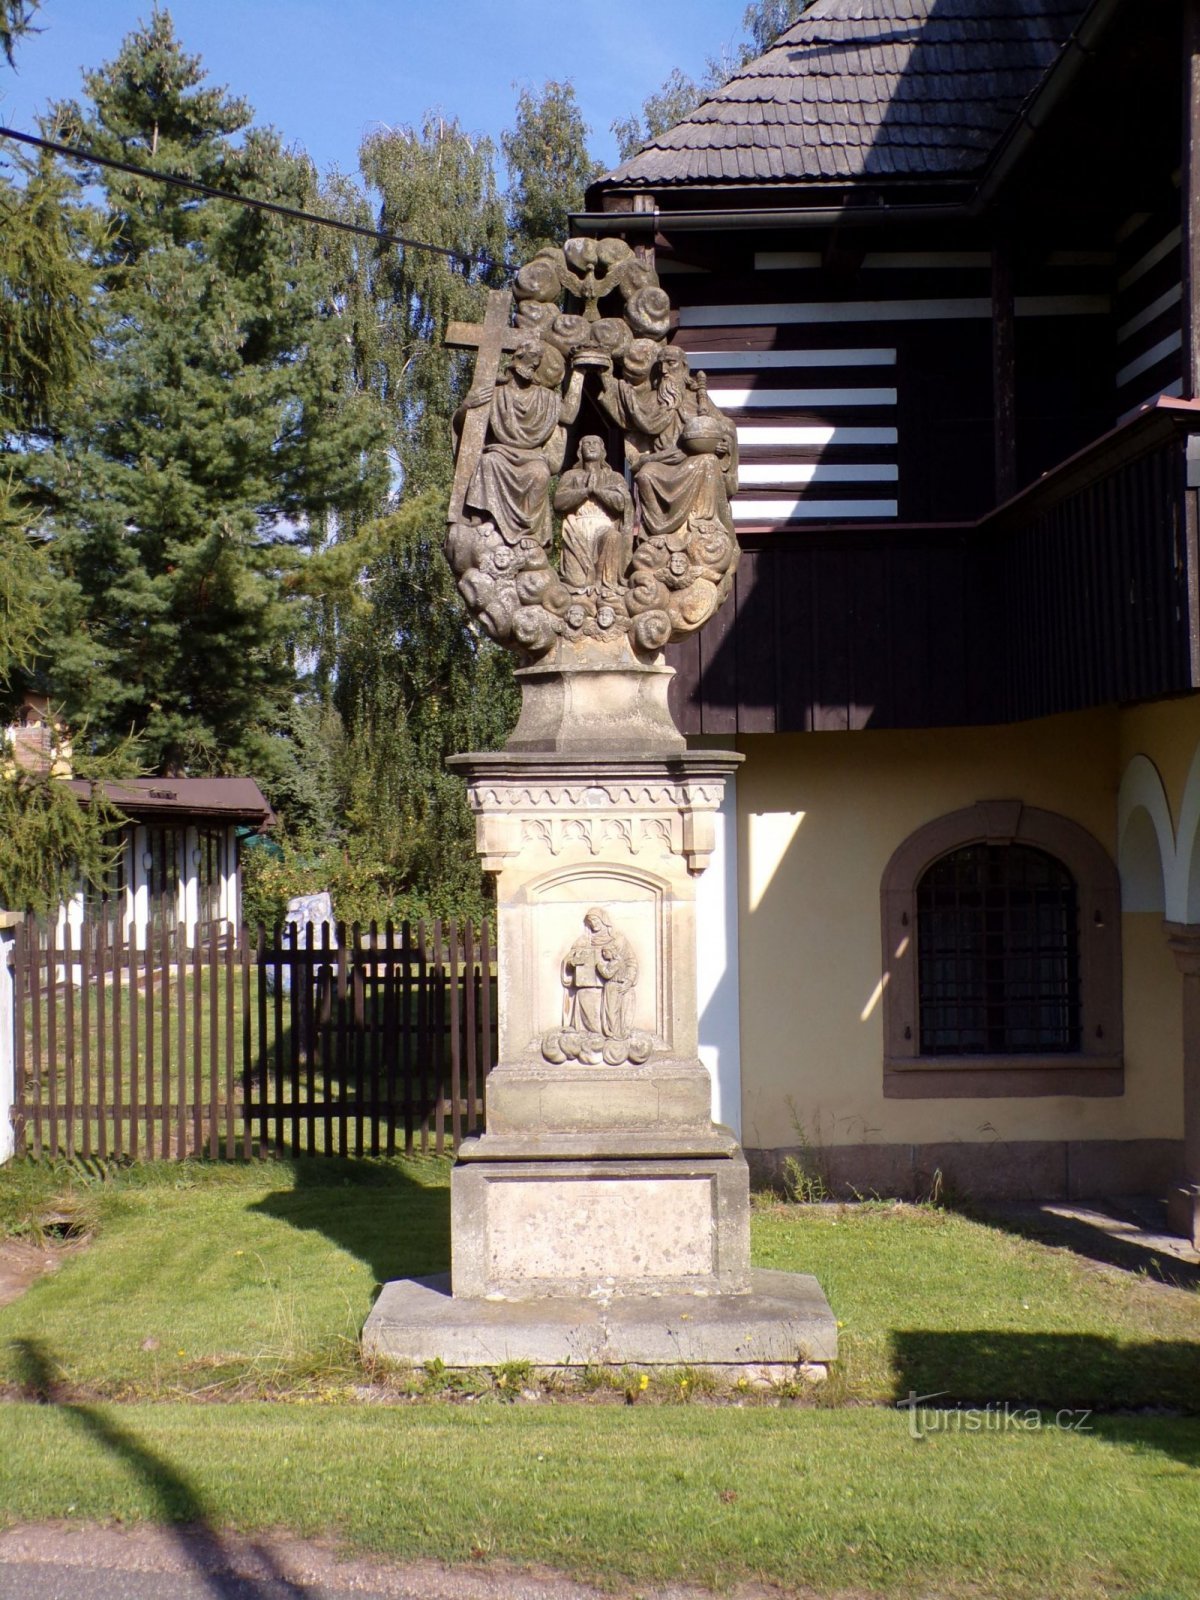 Standbeeld van de kroning van de Maagd Maria op nr. 104 (Hajnice, 8.9.2021 september XNUMX)